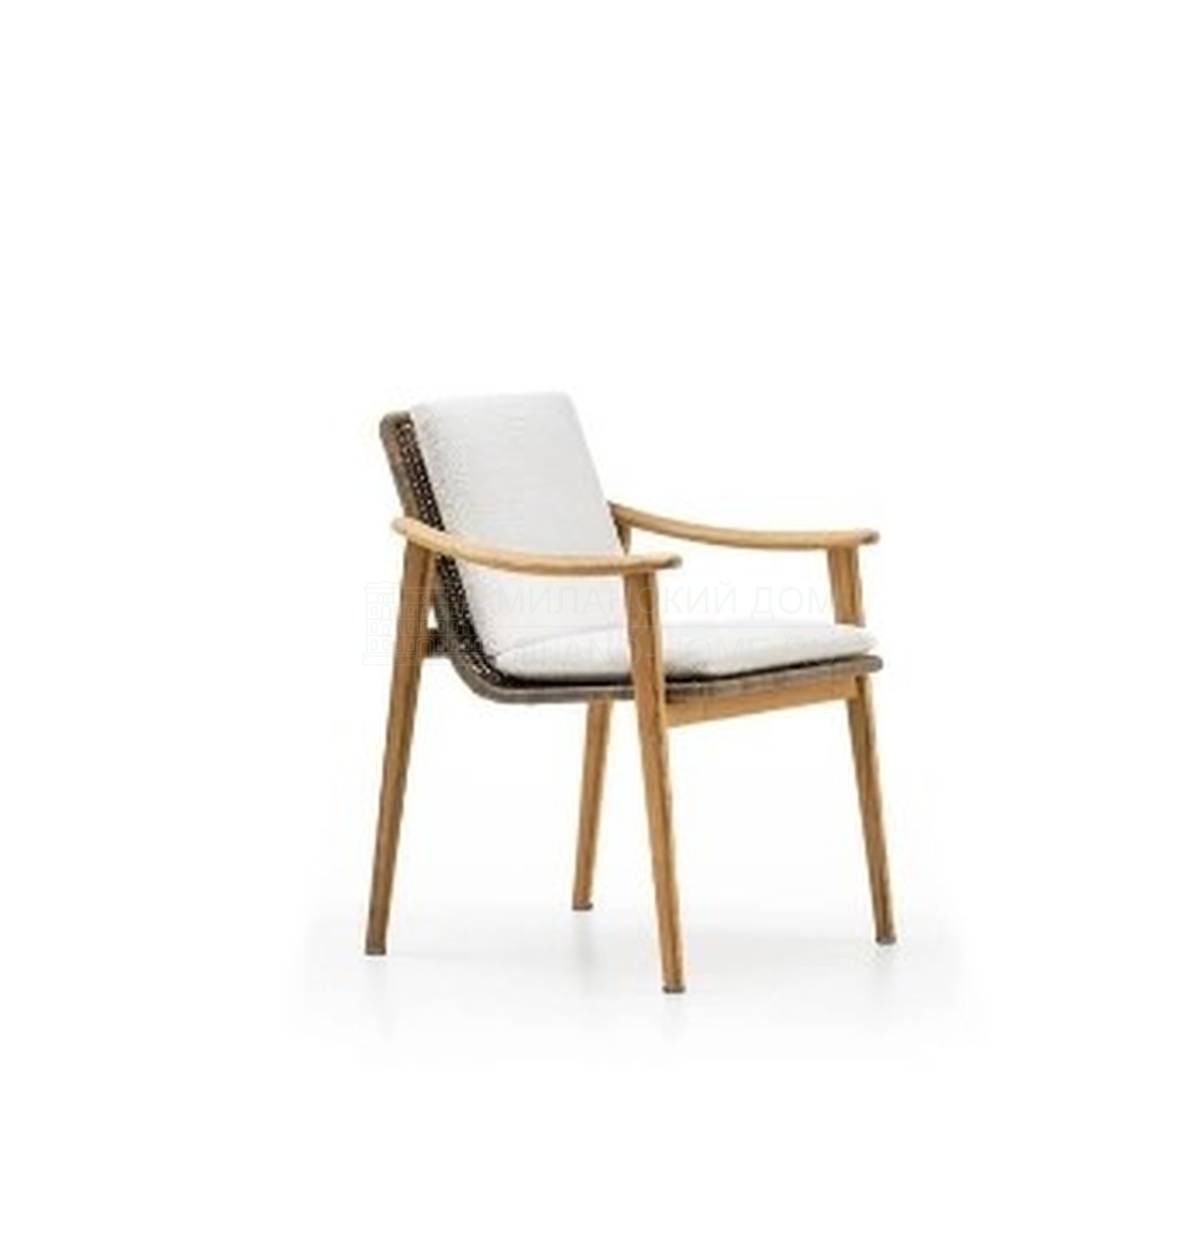 Полукресло Fynn outdoor small armchair из Италии фабрики MINOTTI